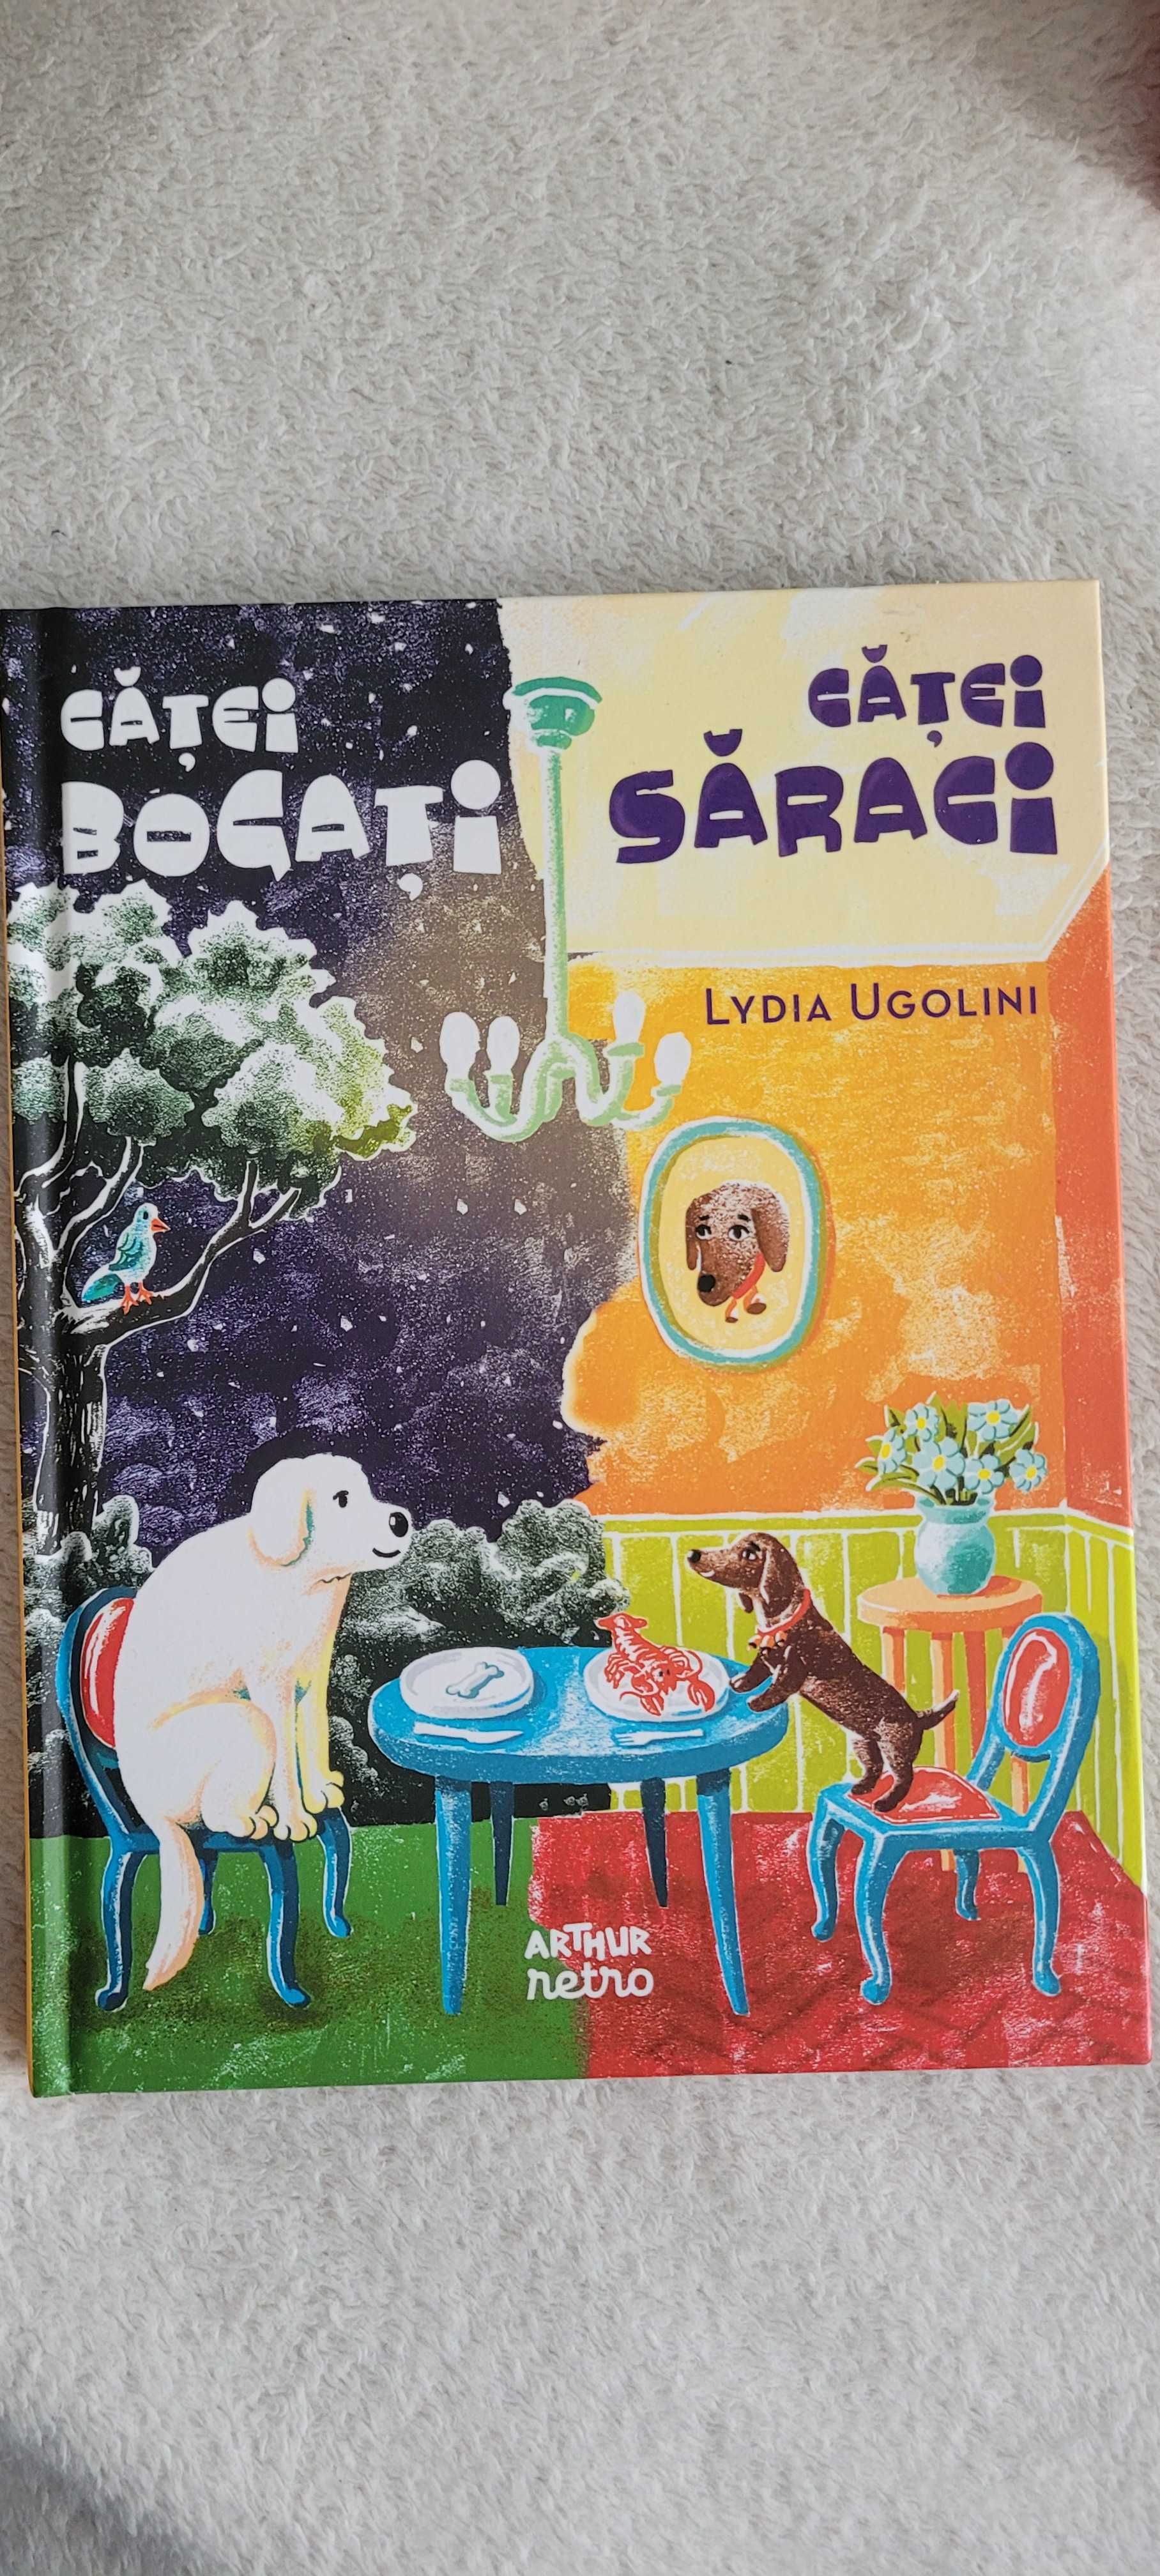 Cartea "Catei Bogati, Catei Saraci "